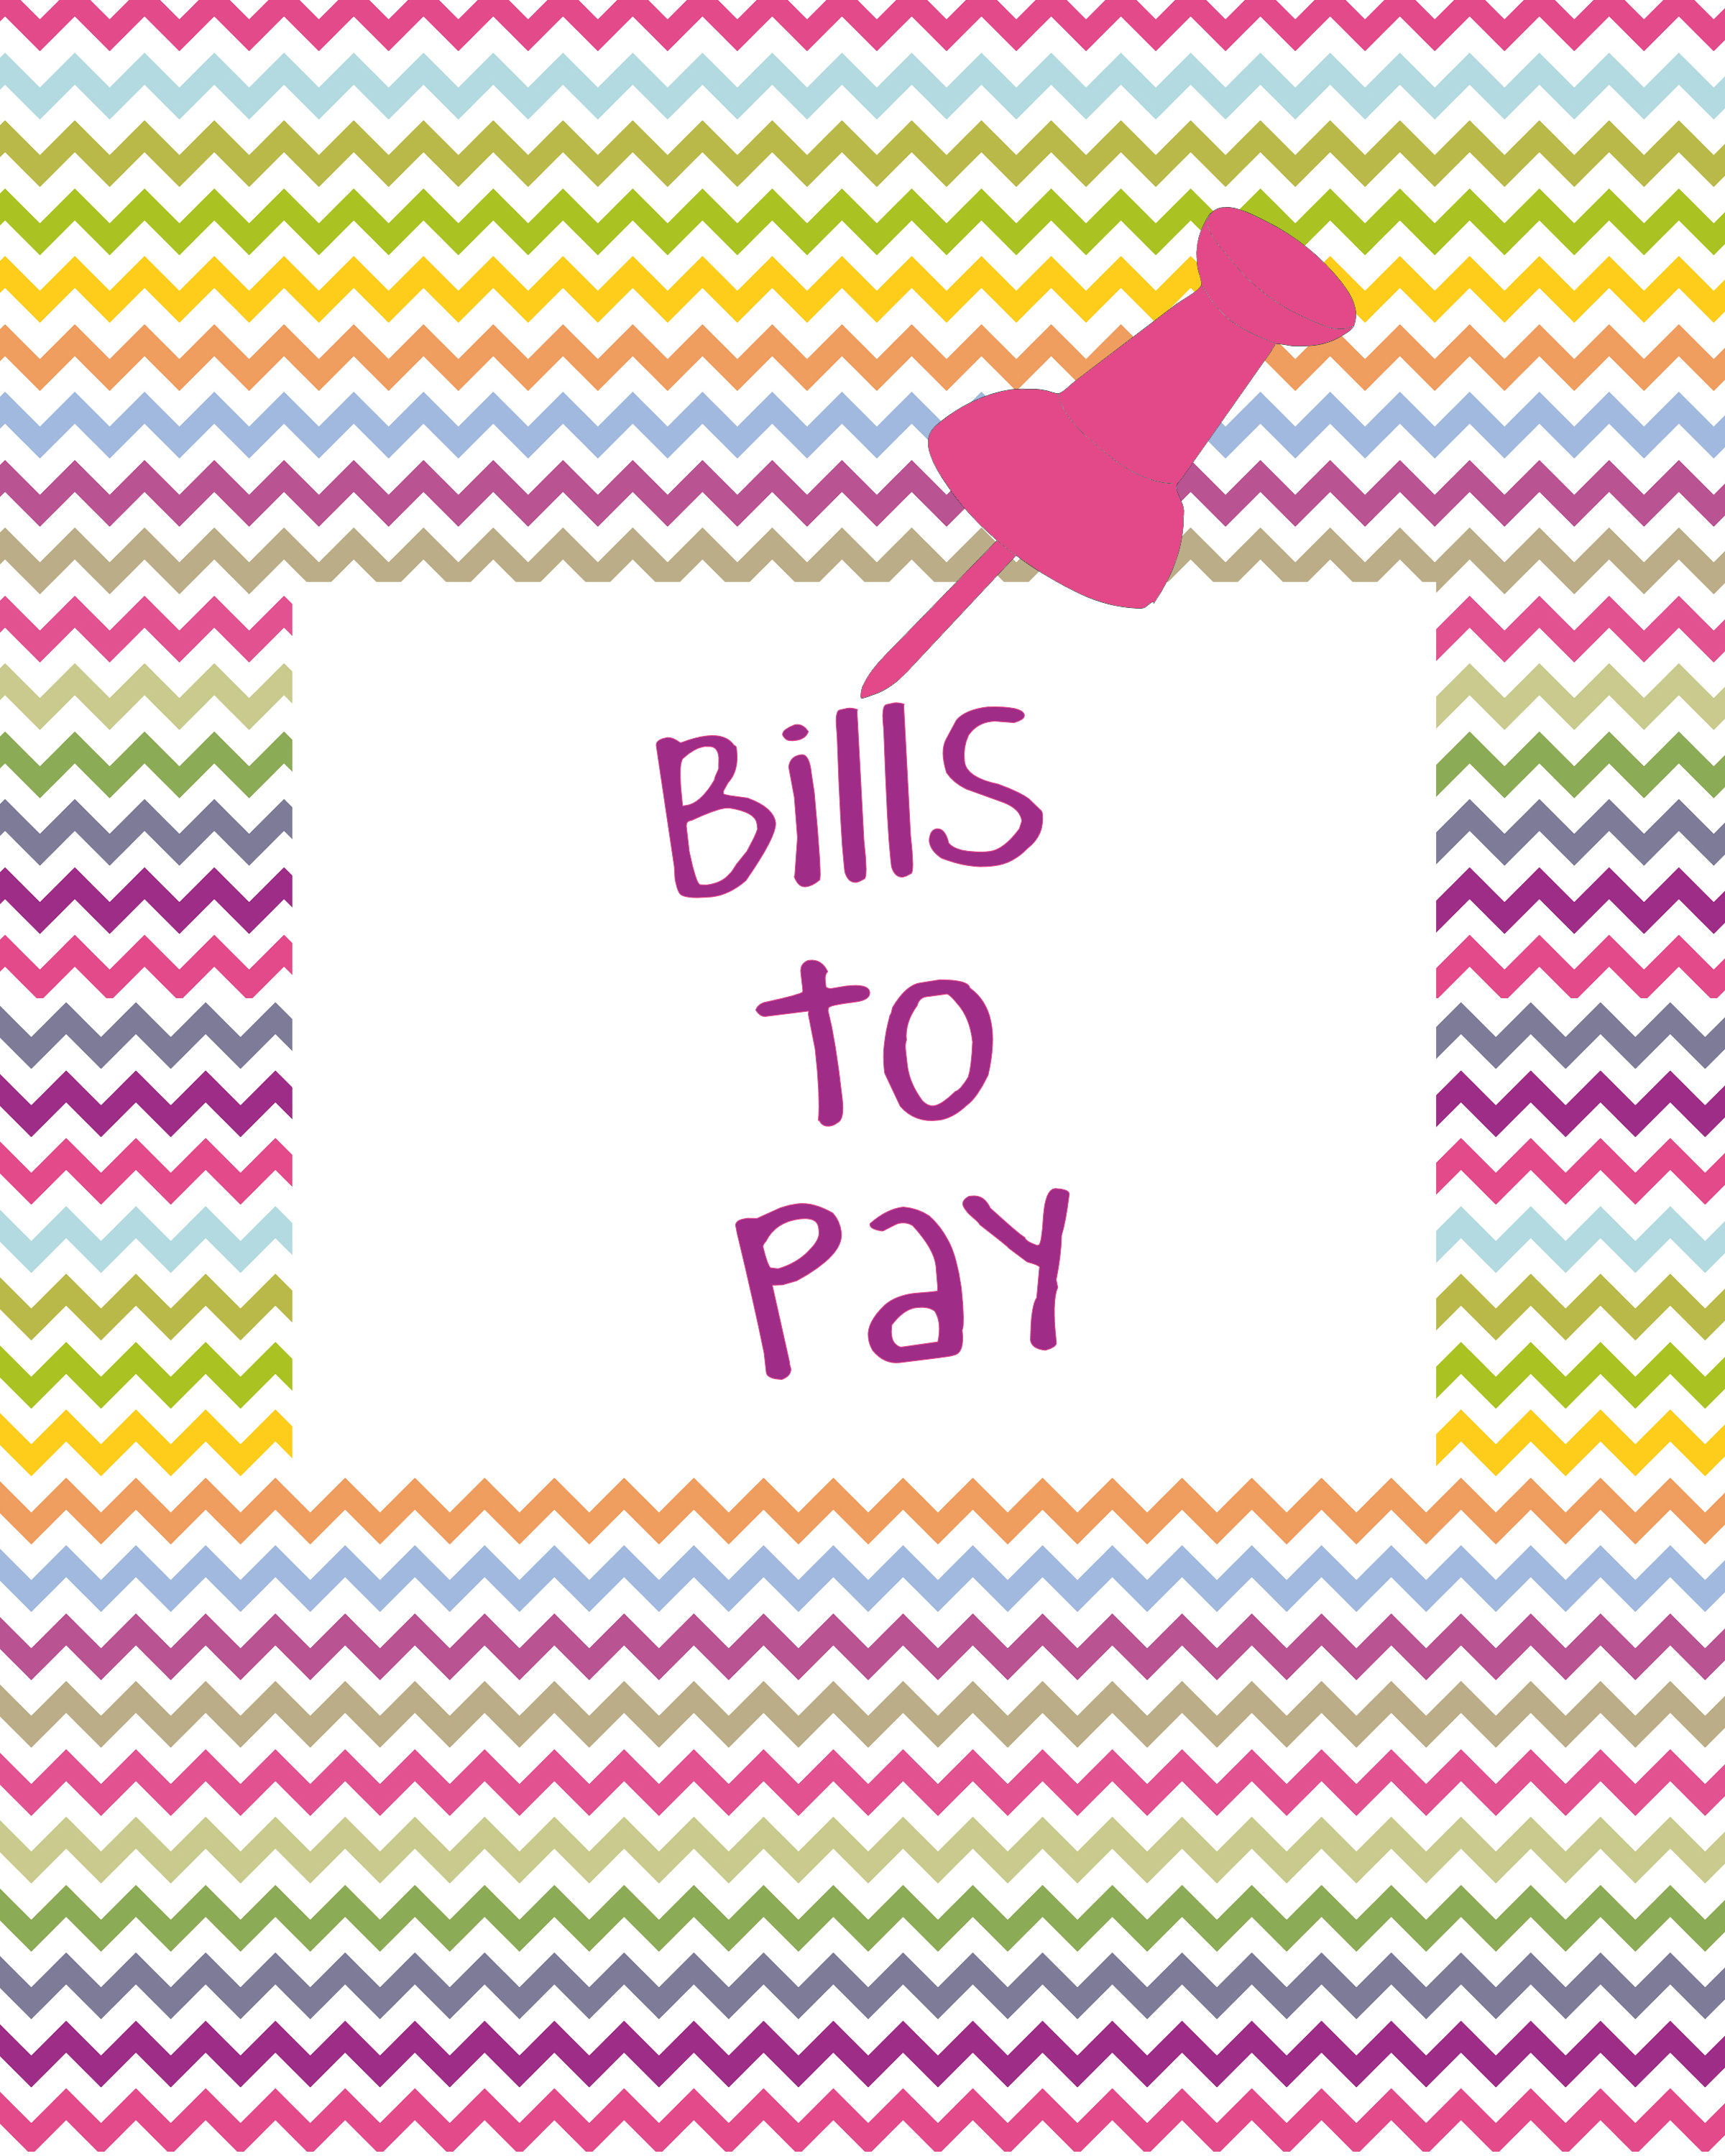 Bills clipart paid bill, Bills paid bill Transparent FREE